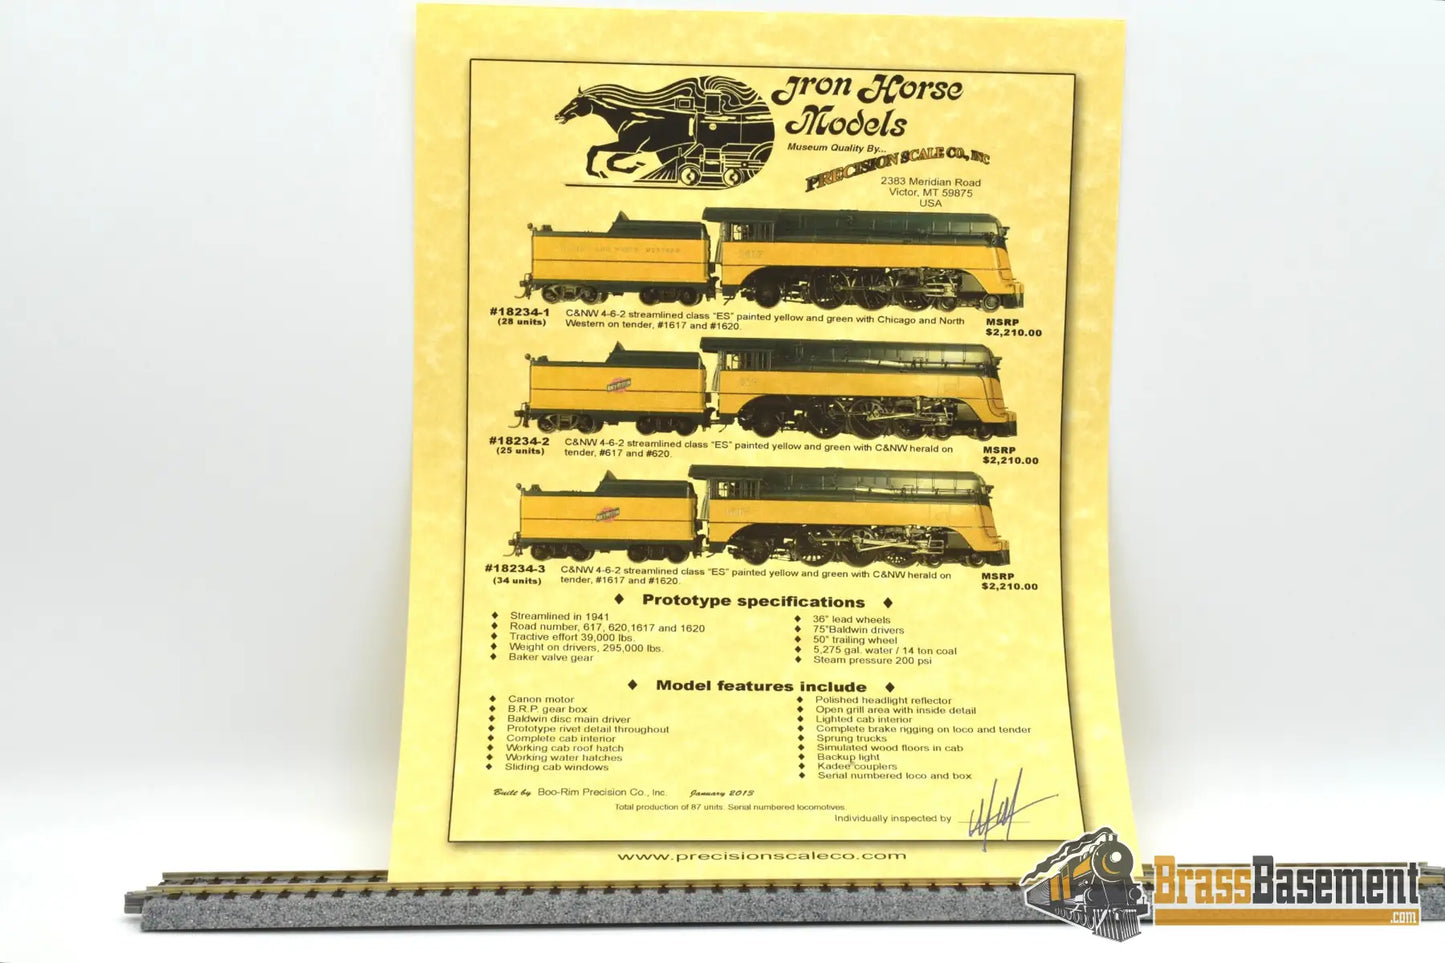 Ho Brass - Psc 18234.3 Chicago & Northwestern Es ’Yellow Belly’ 4 - 6 - 2 #1617 Mint! Steam